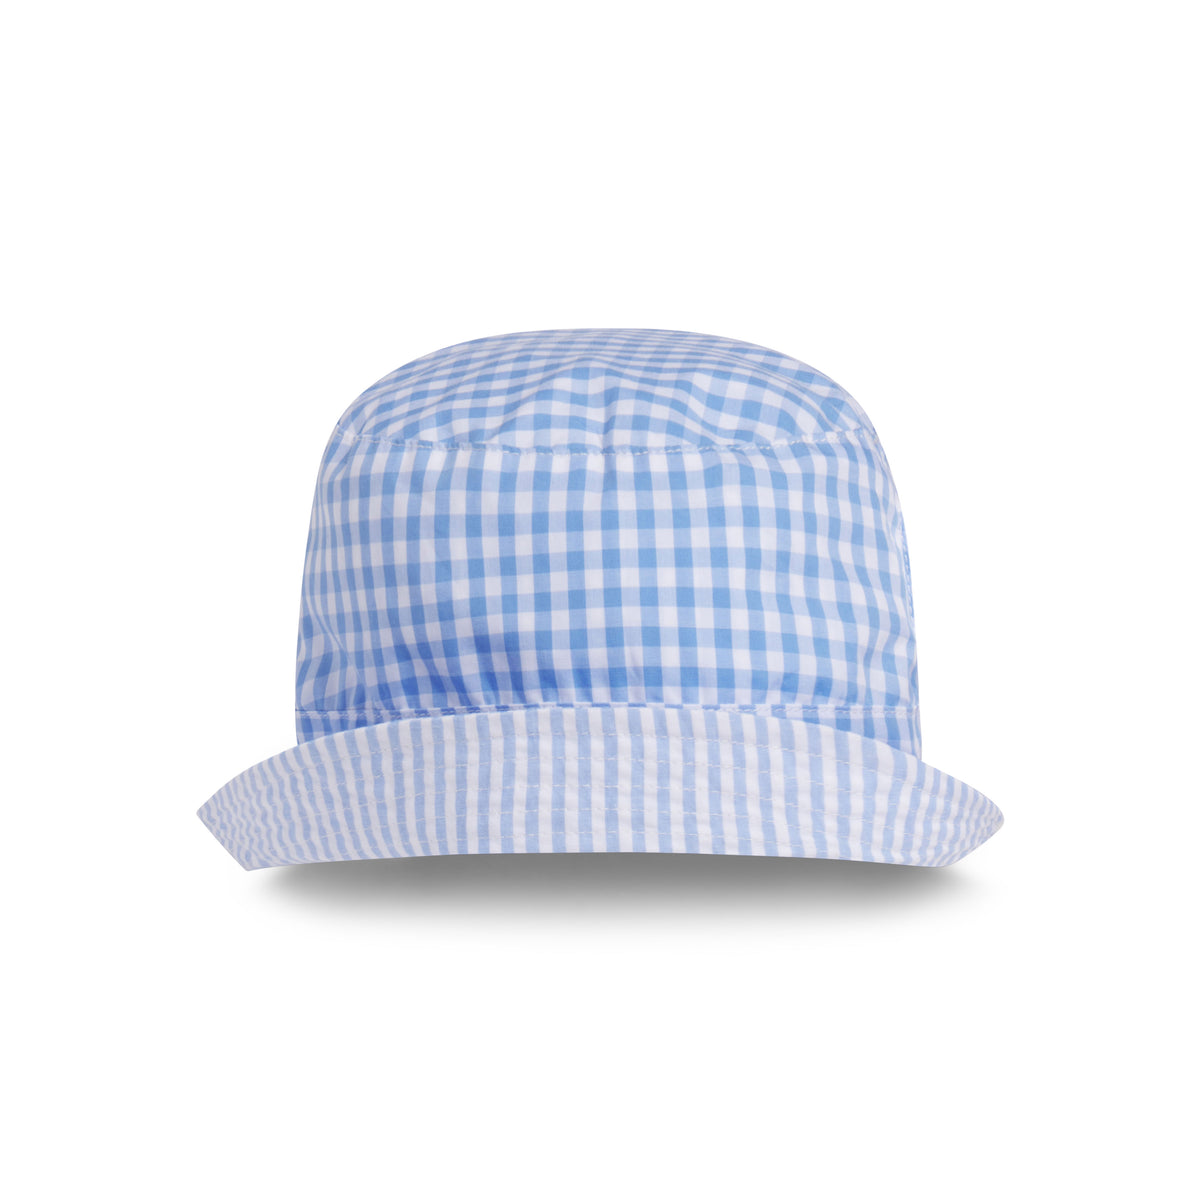 Blake Baby Reversible Bucket Hat, Vista Blue Seersucker